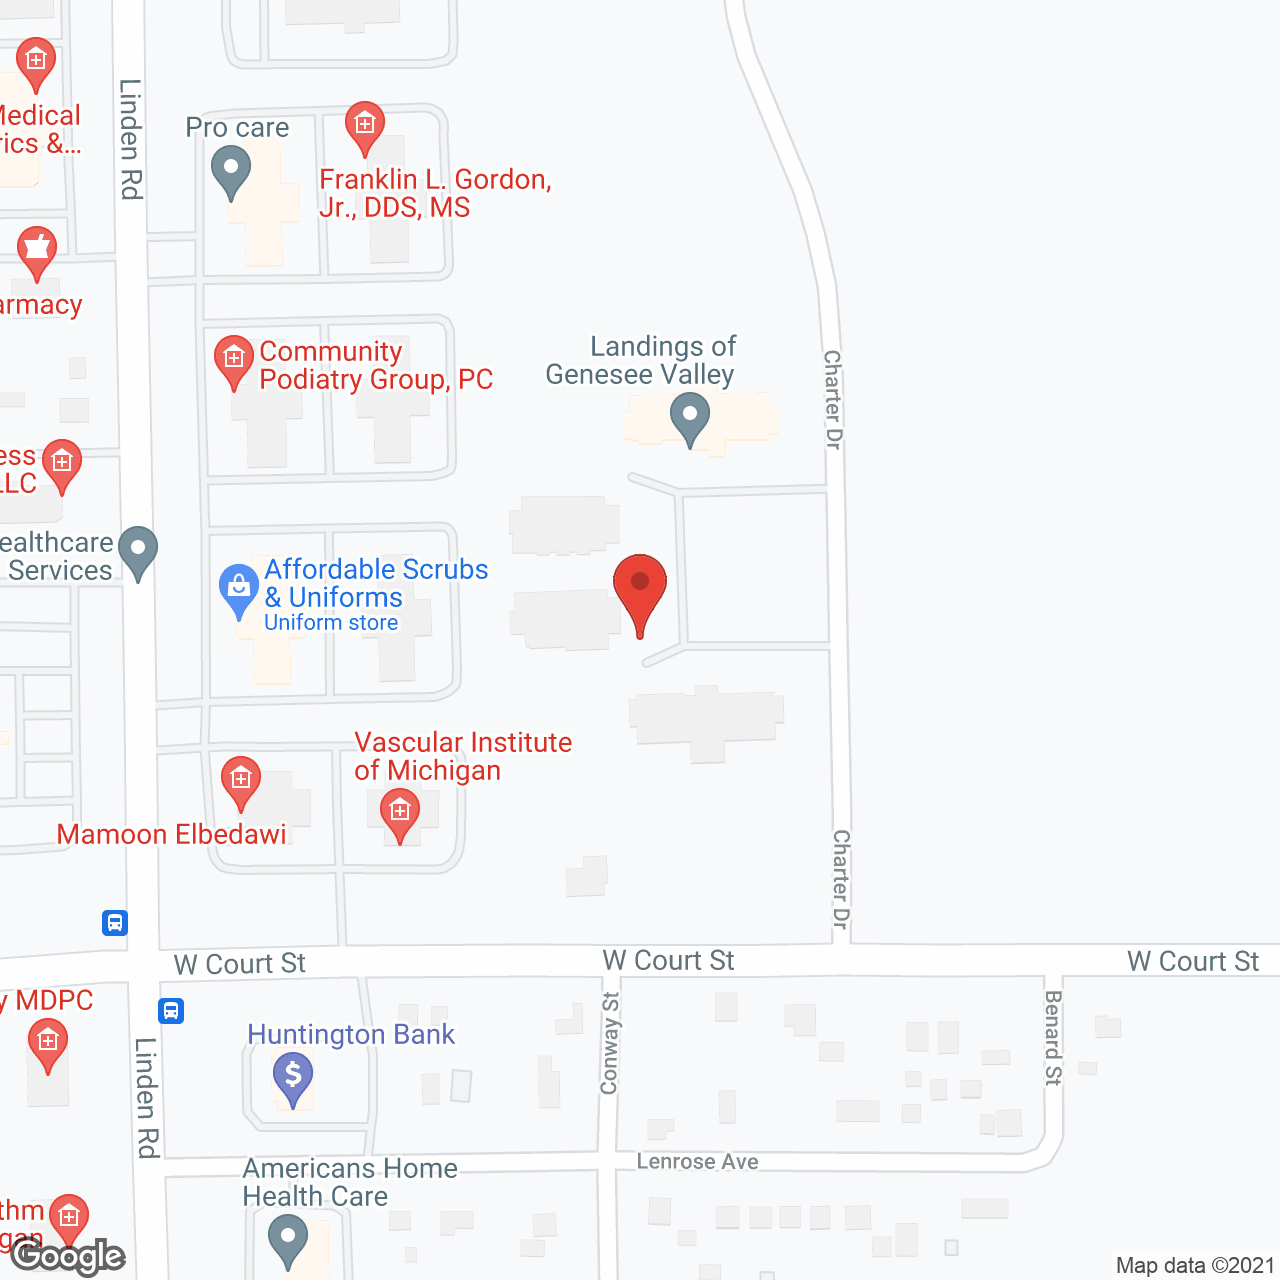 Landings of Genesee Valley in google map